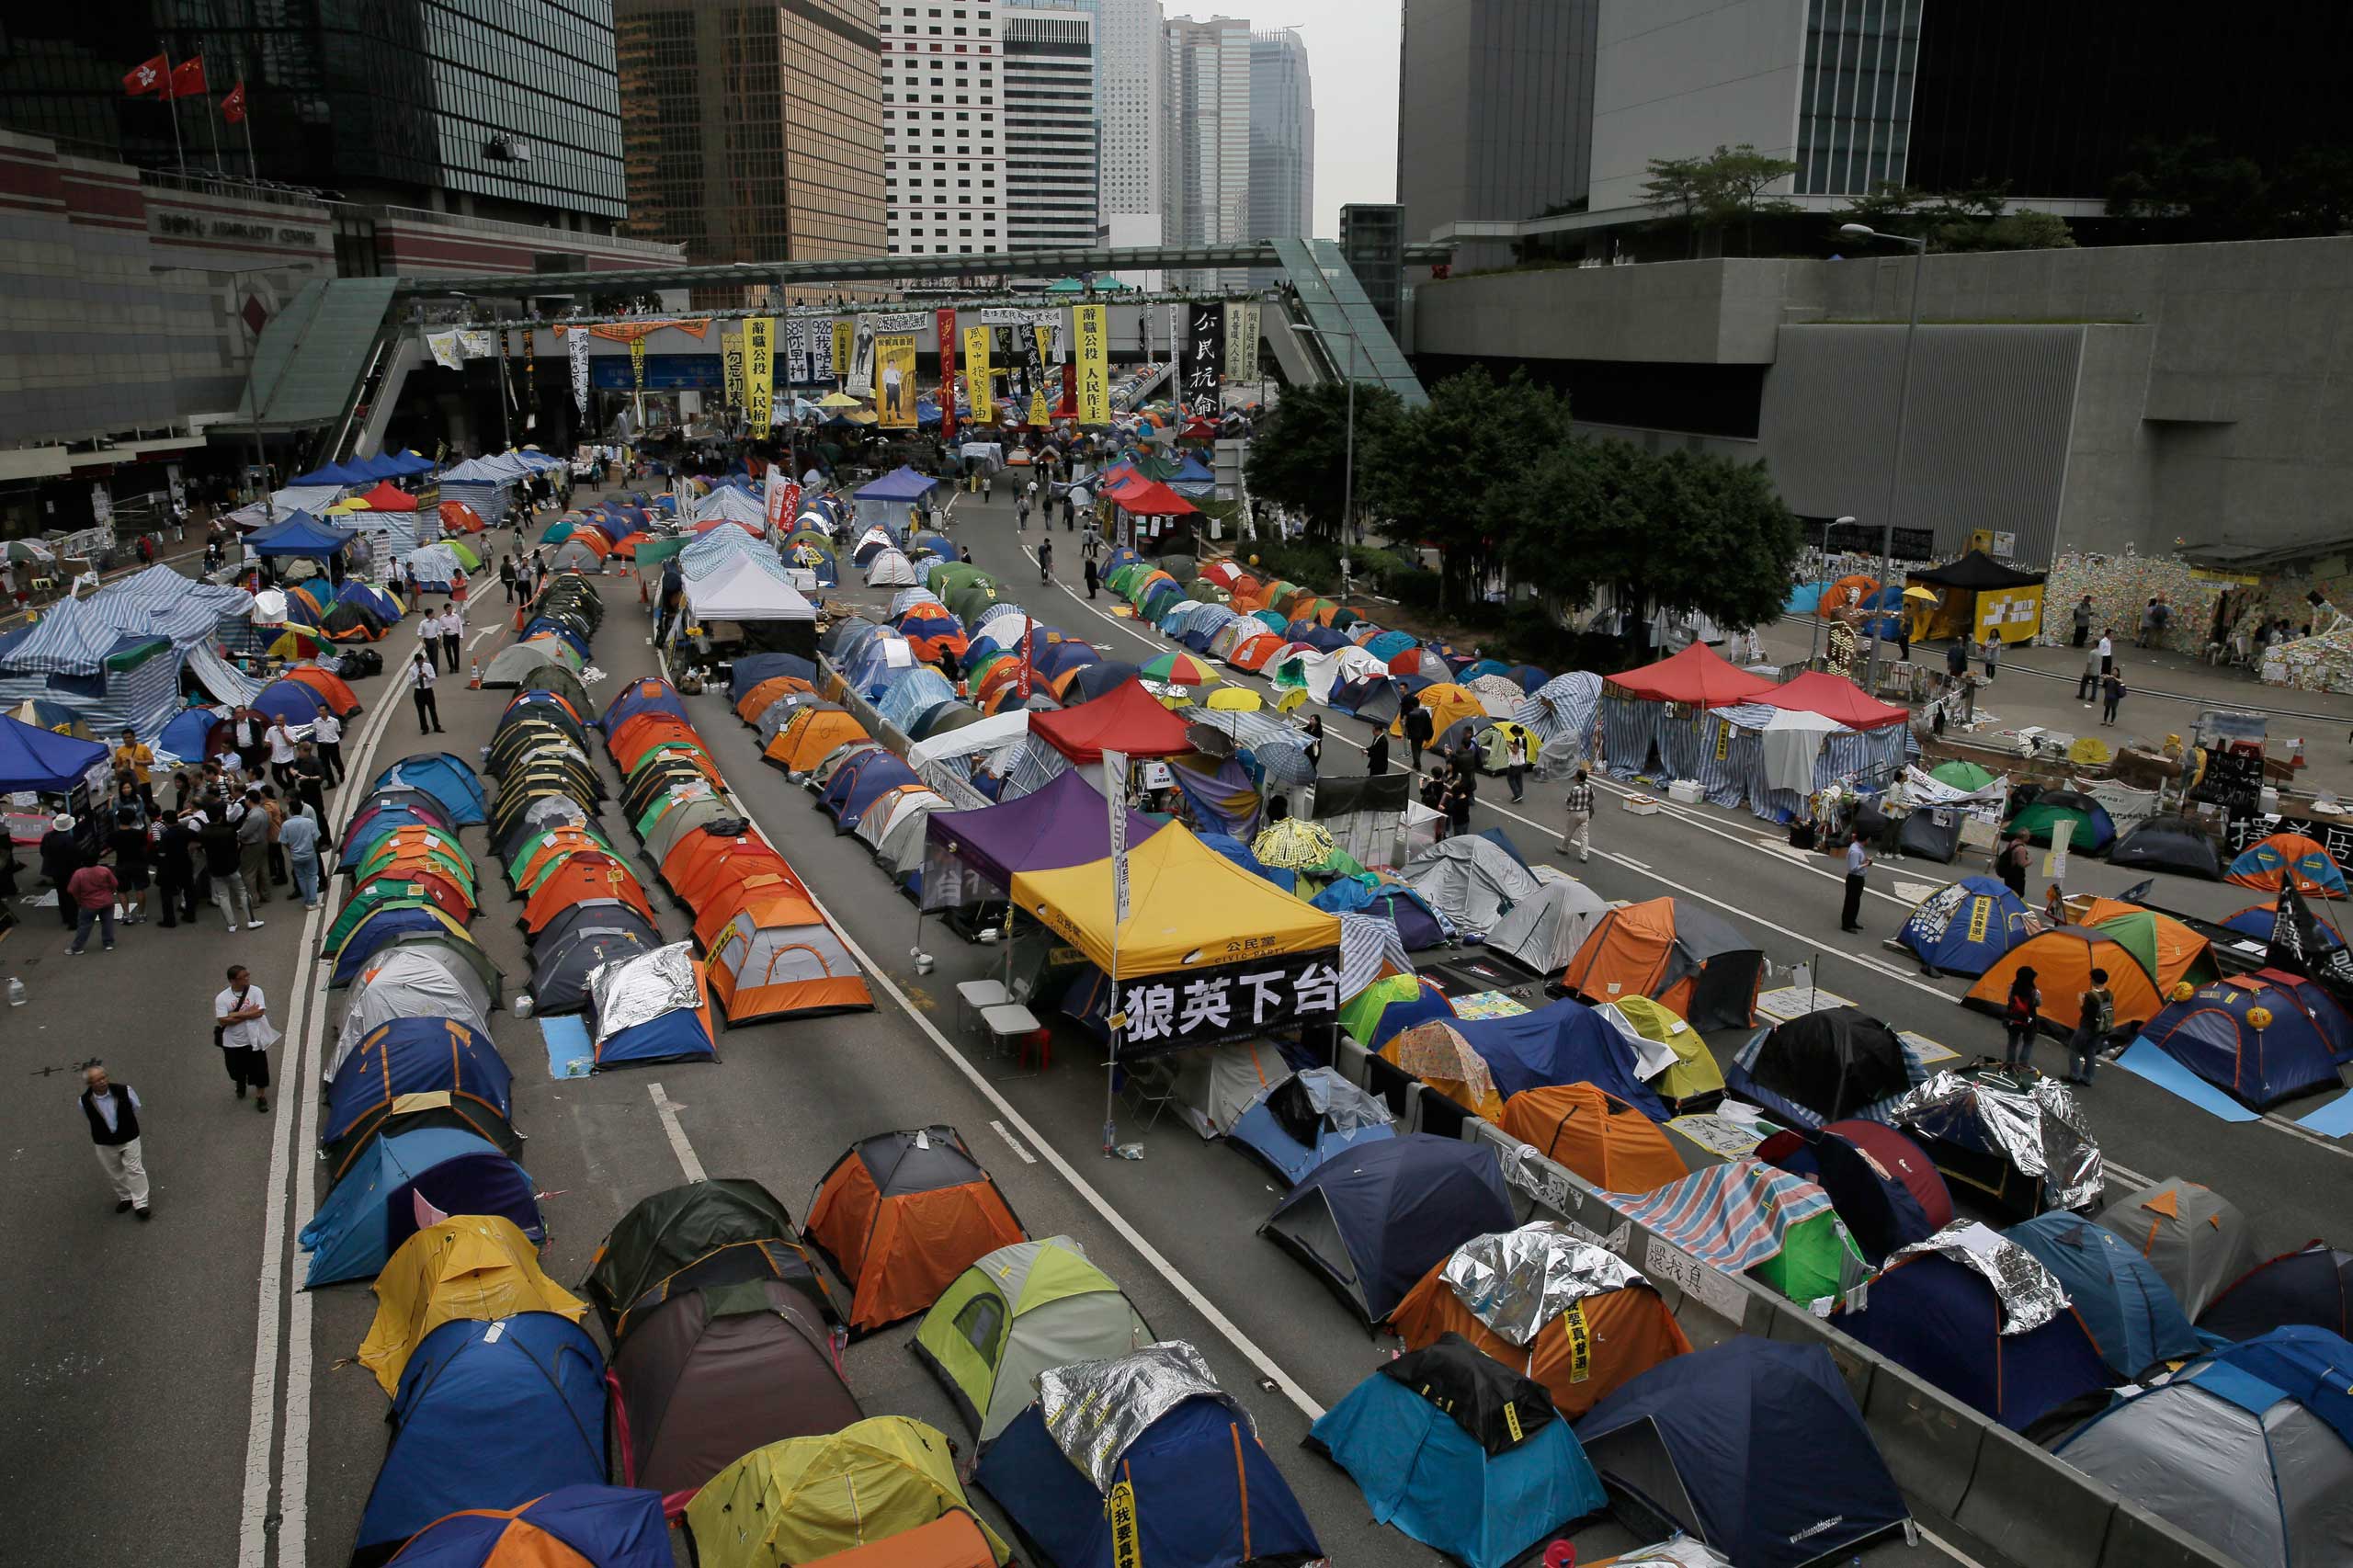 Hong Kong Democracy Protest